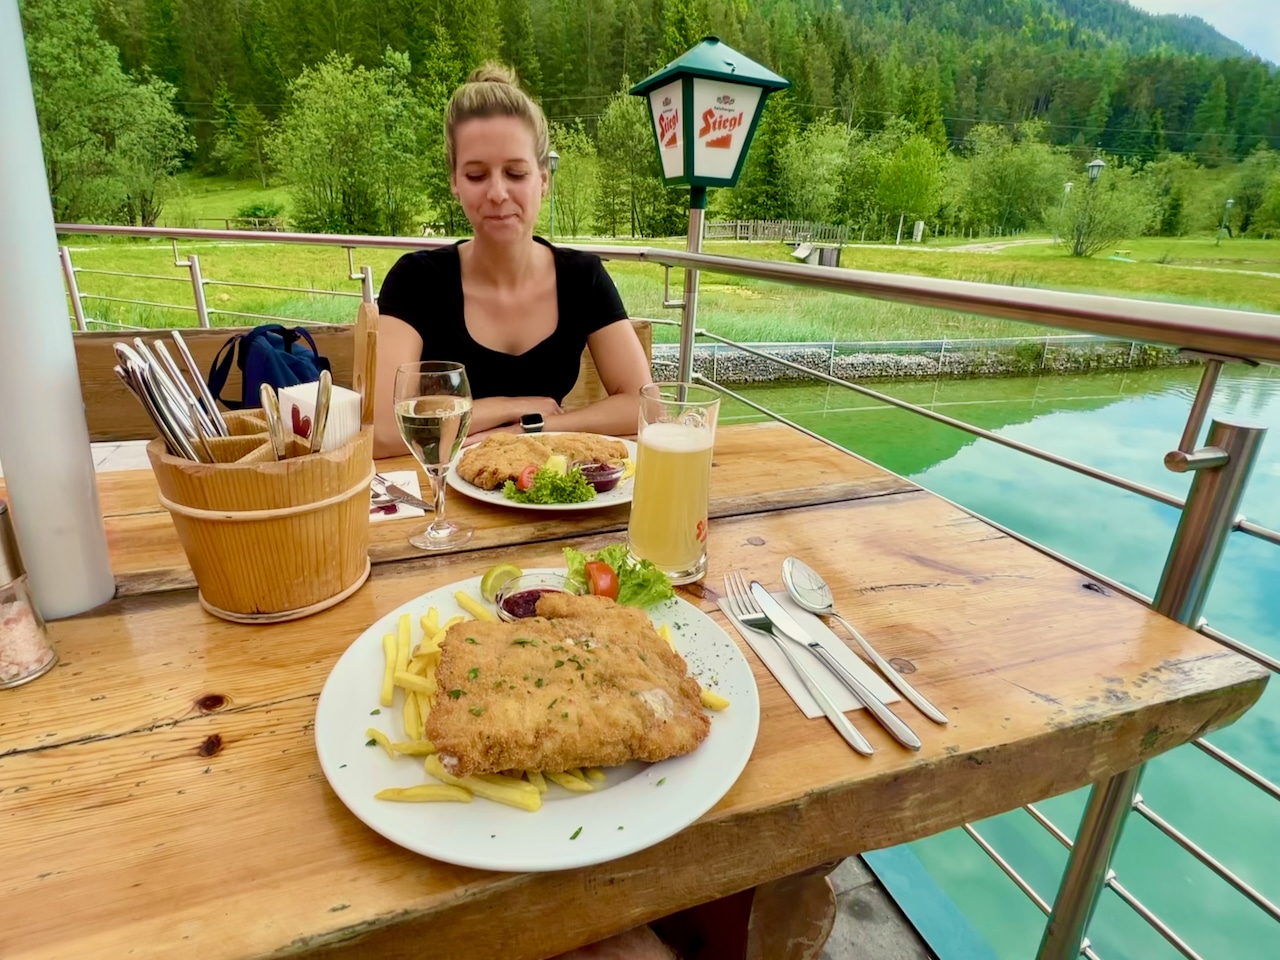 Durante un día relajante en el lago, puede fortalecerse en uno de los restaurantes, como aquí en el popular rancho de truchas. Travel Report Fieberbrunn Pillerseetal experiencias consejos lugares de interés actividades